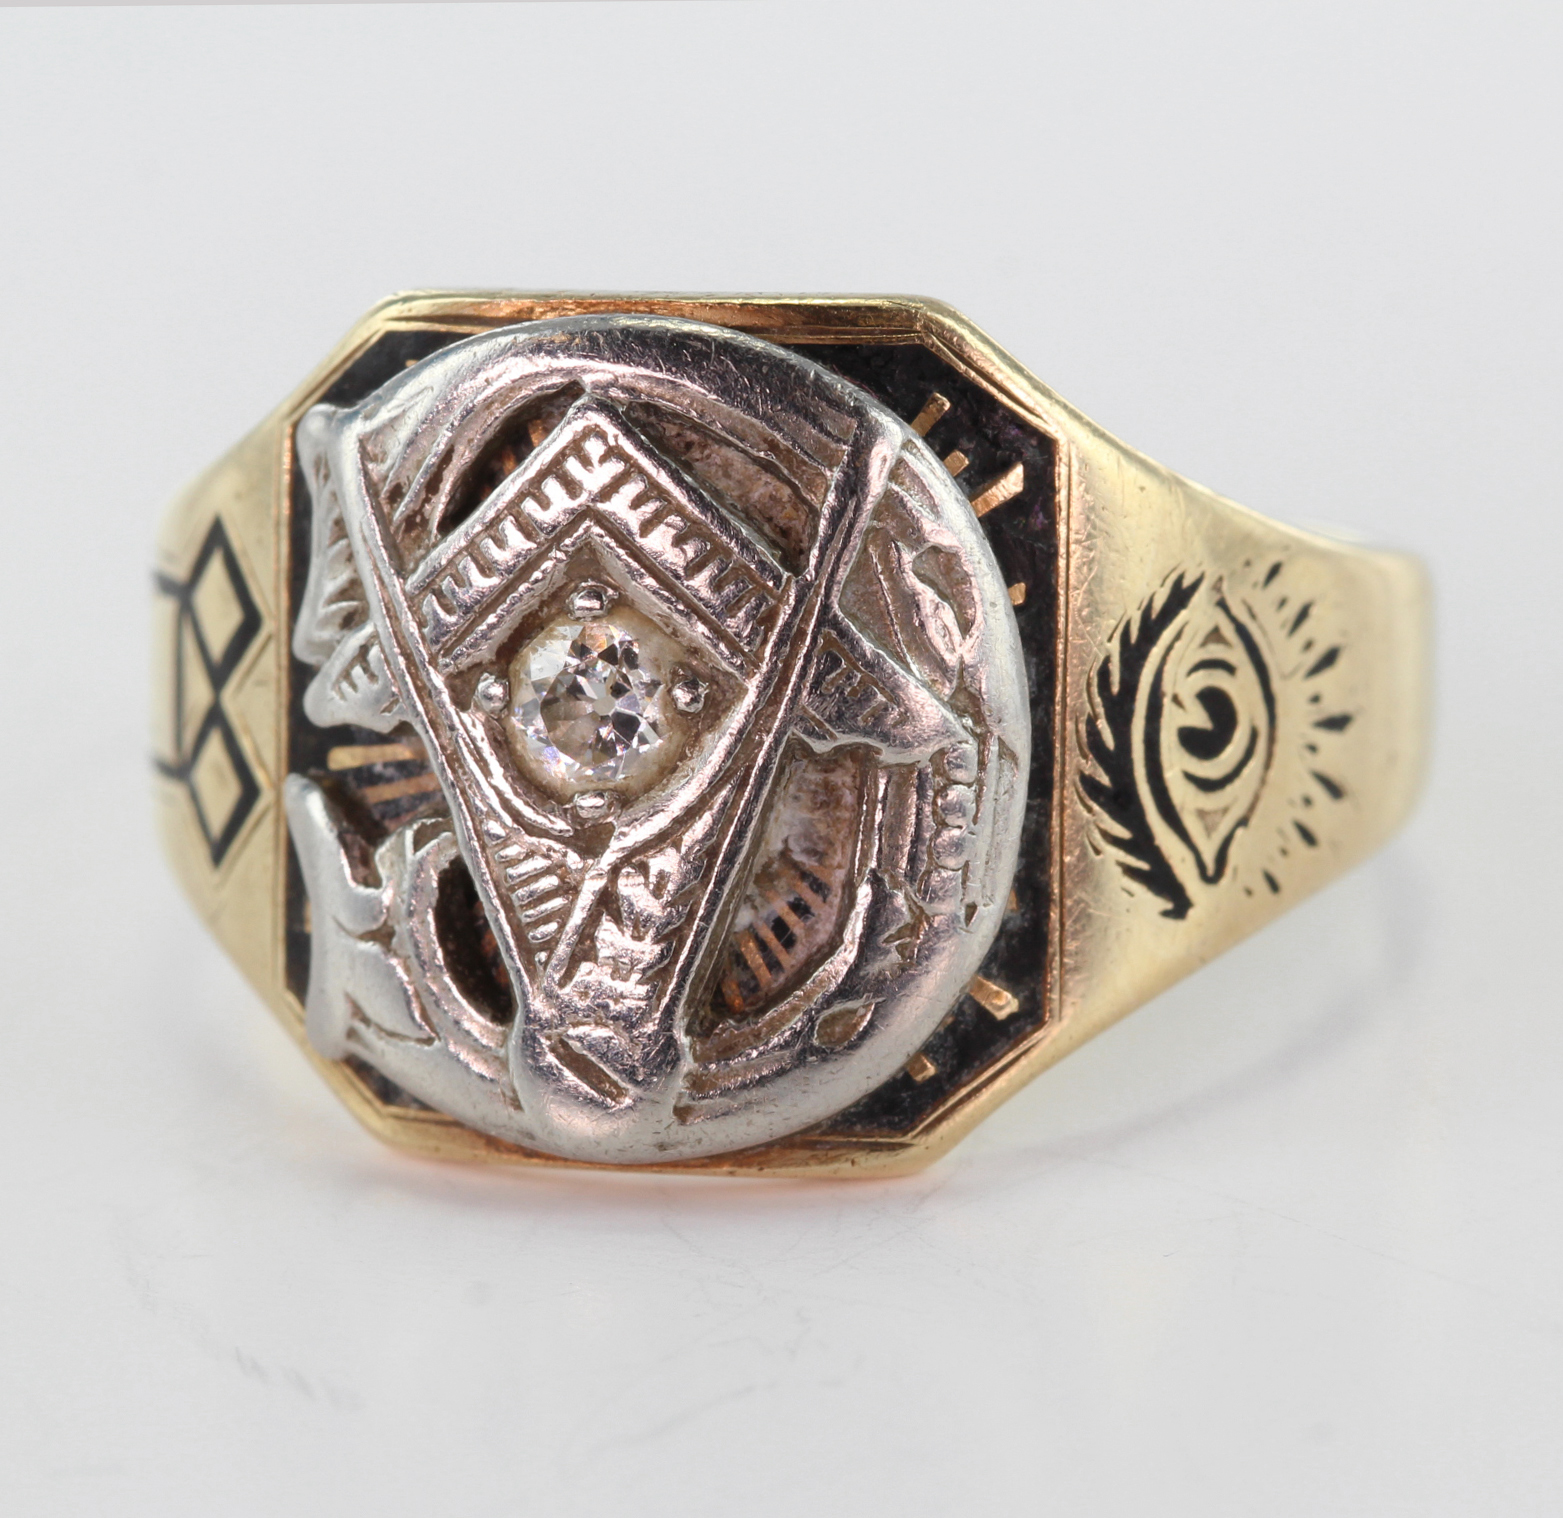 Yellow metal 10k U.S.A. Masonic Ring set with small Diamond size S weight 6.9g